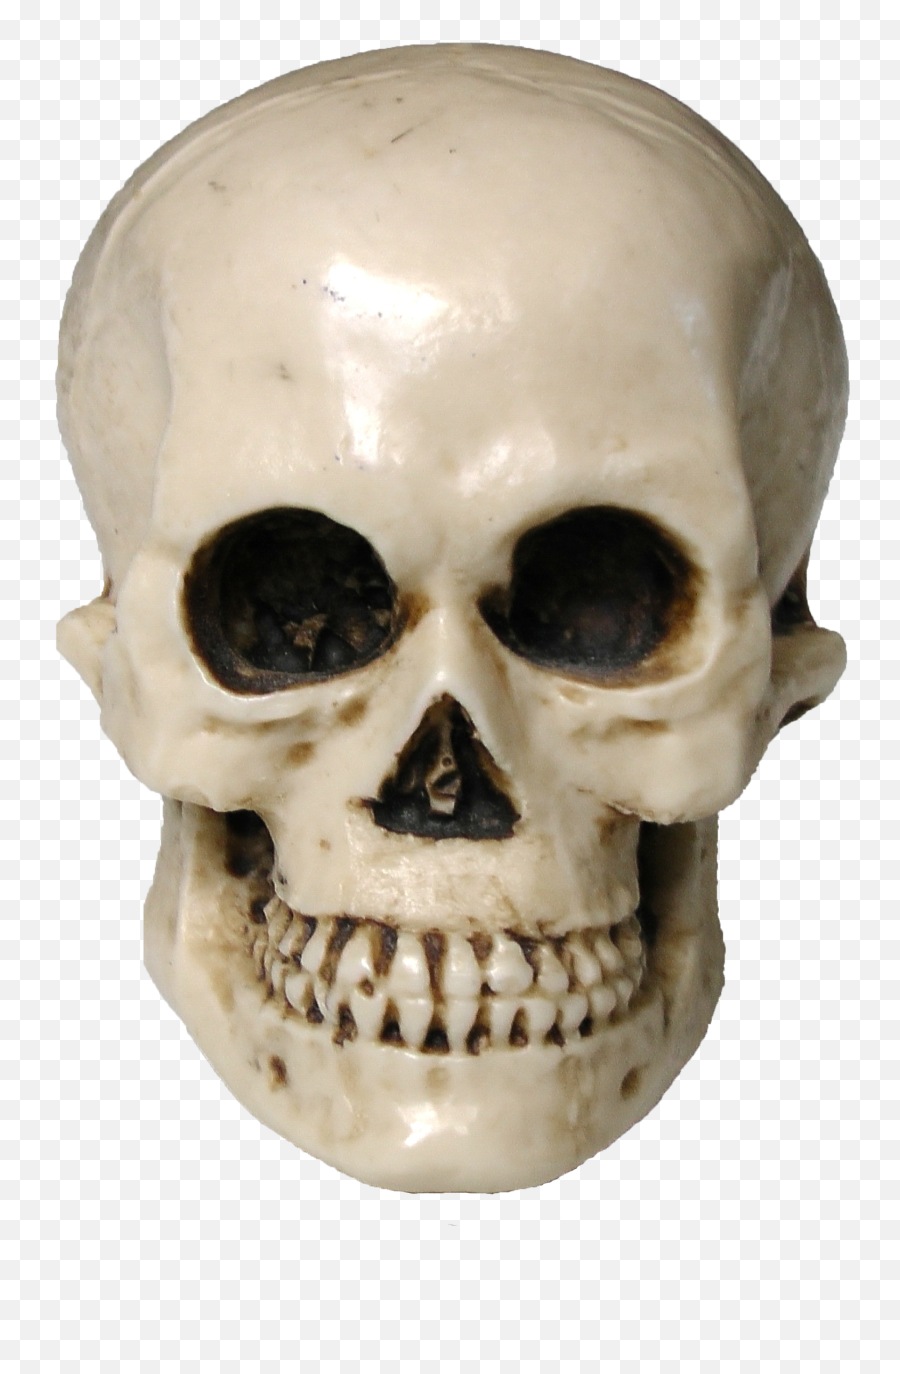 Download Skull Png Image For Free Skeleton Transparent